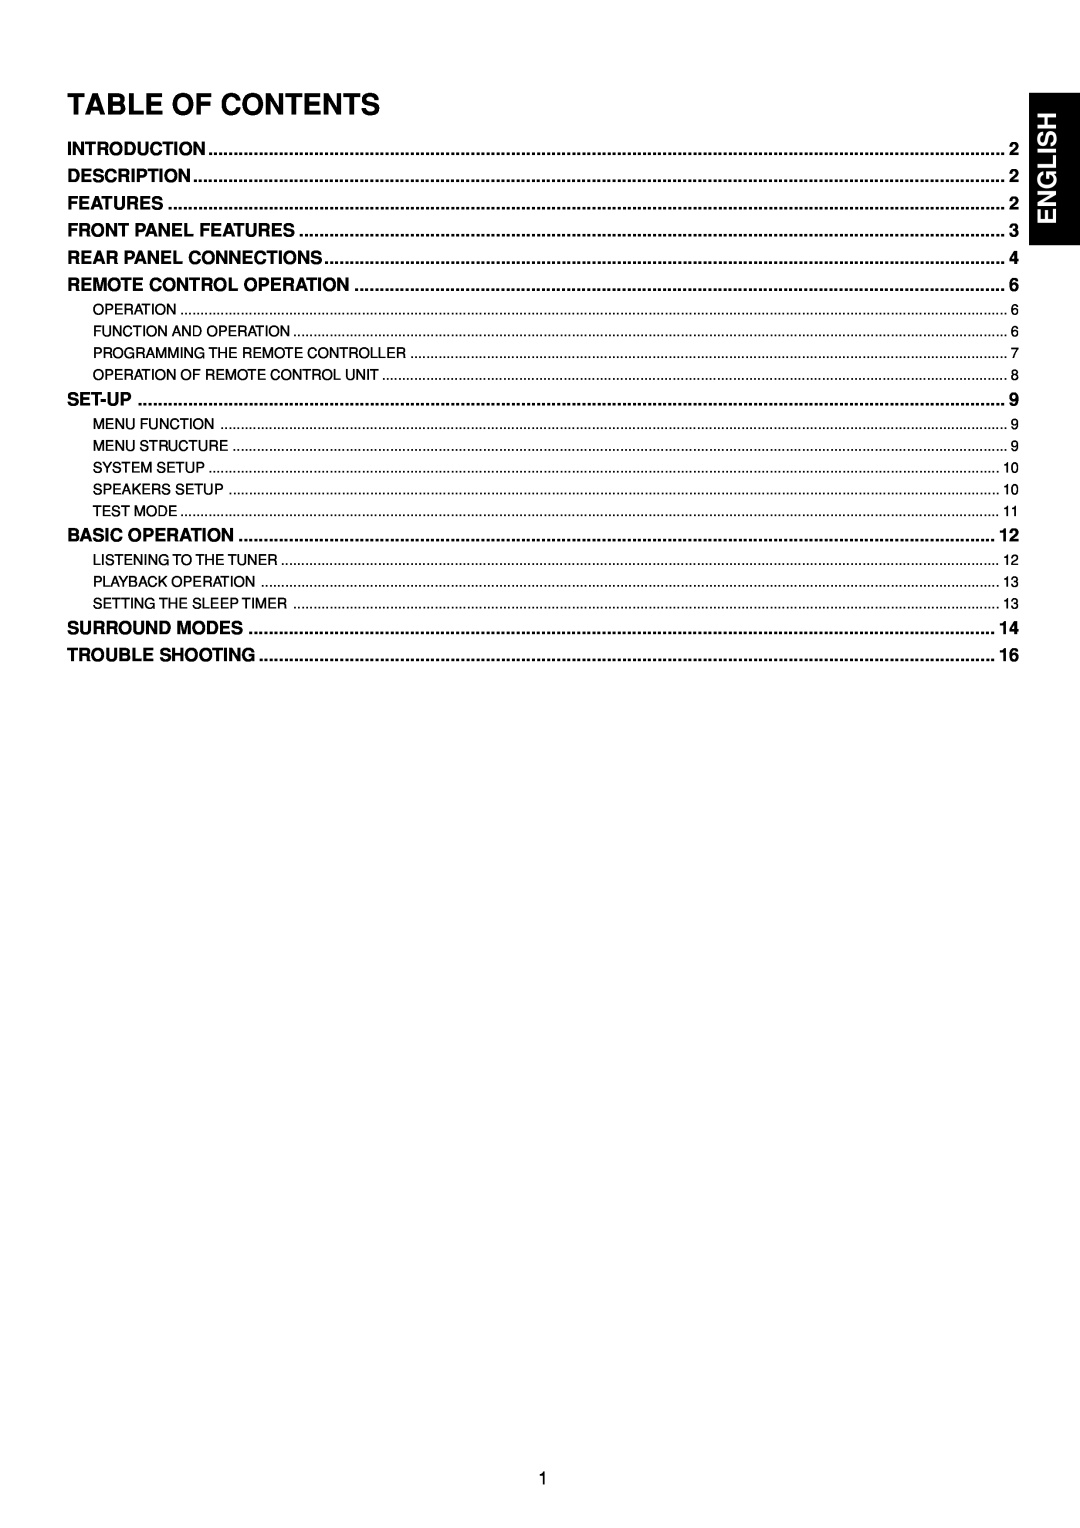 Marantz SR4200 manual Table Of Contents, English 